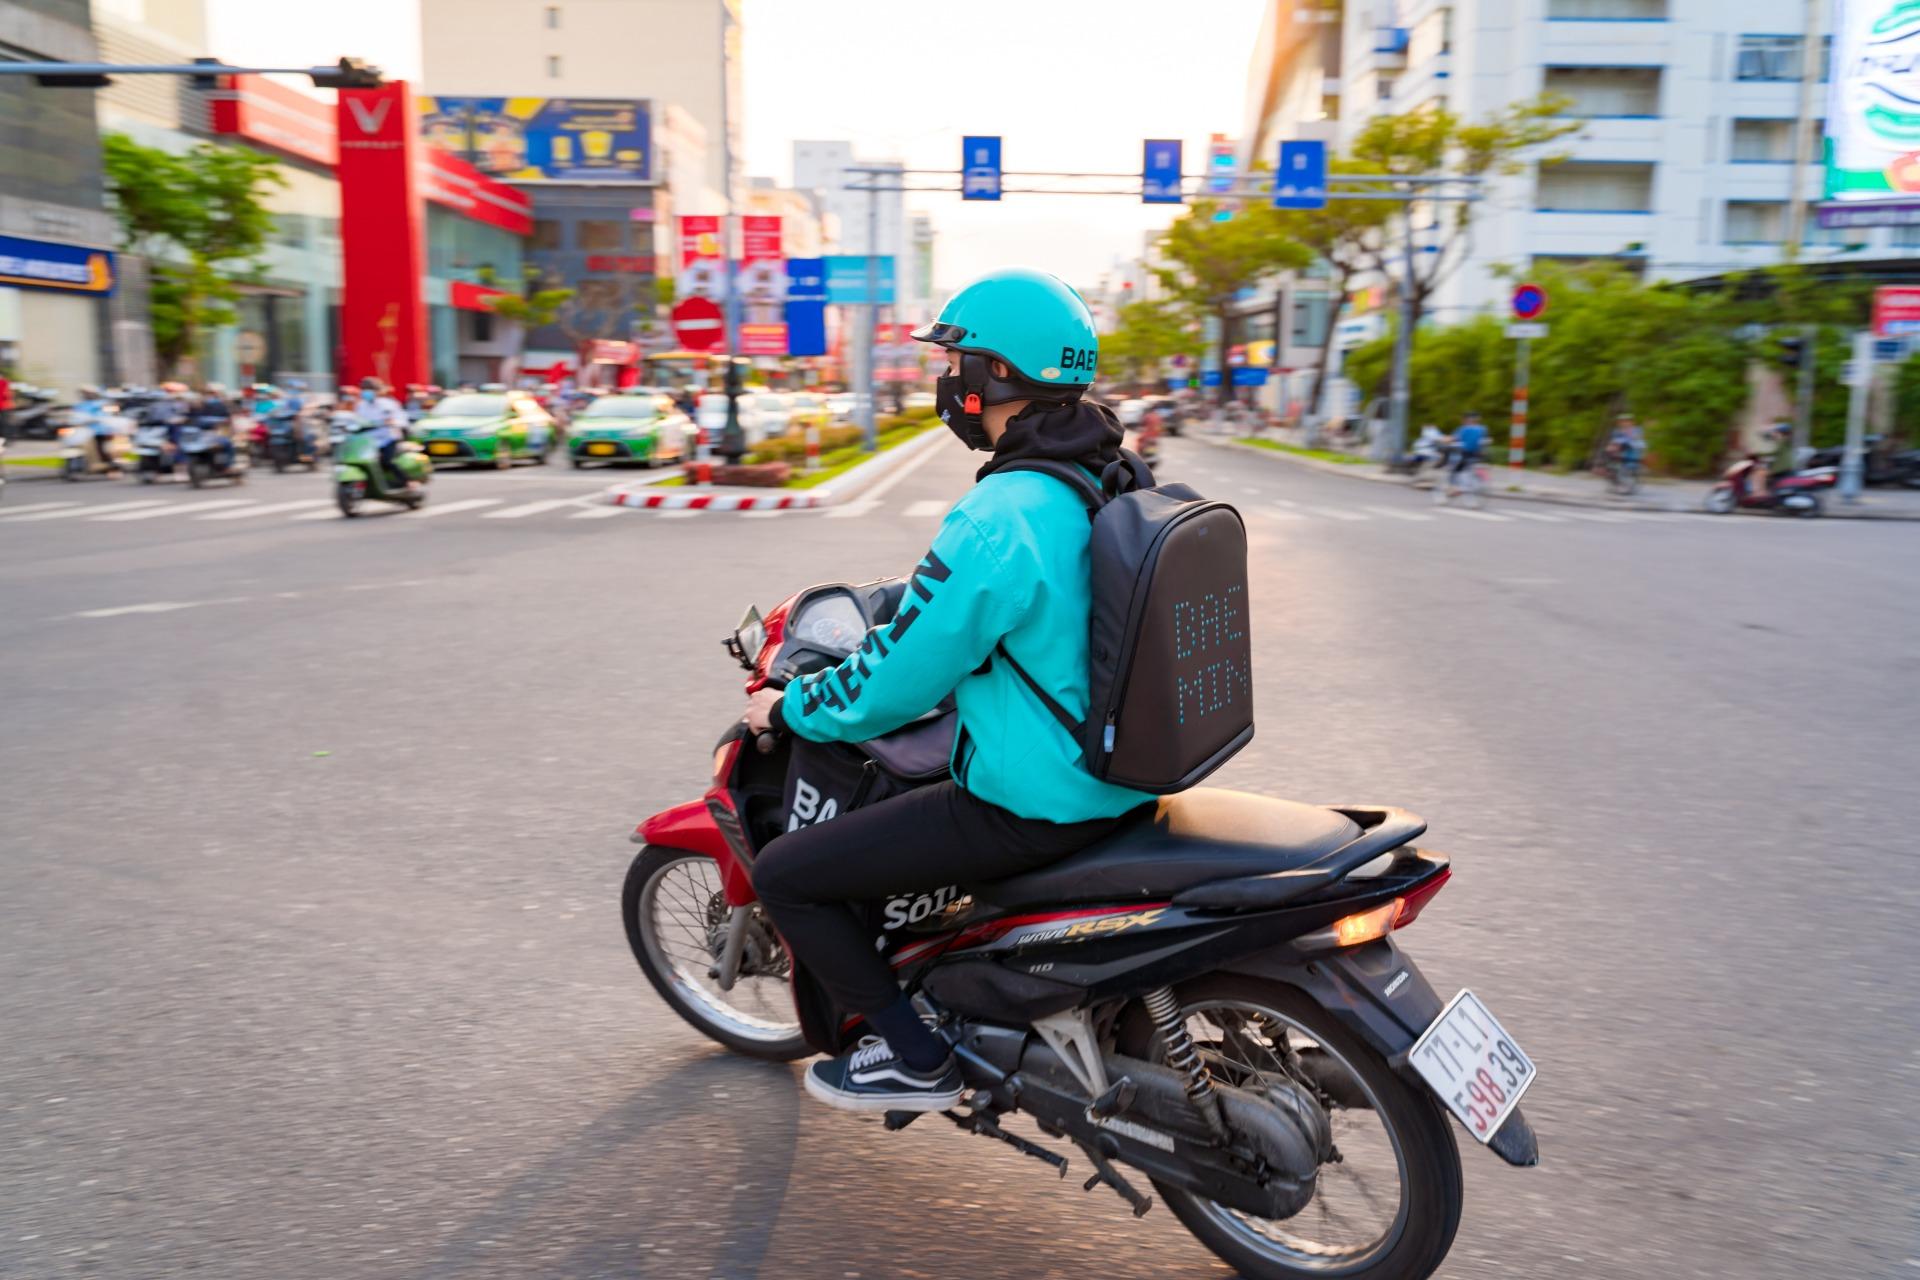 Những mẹo giúp tiết kiệm xăng khi đi xe máy - BAEMIN Rider Blog - Tin nóng giòn dành cho đối tác tài xế BAEMIN